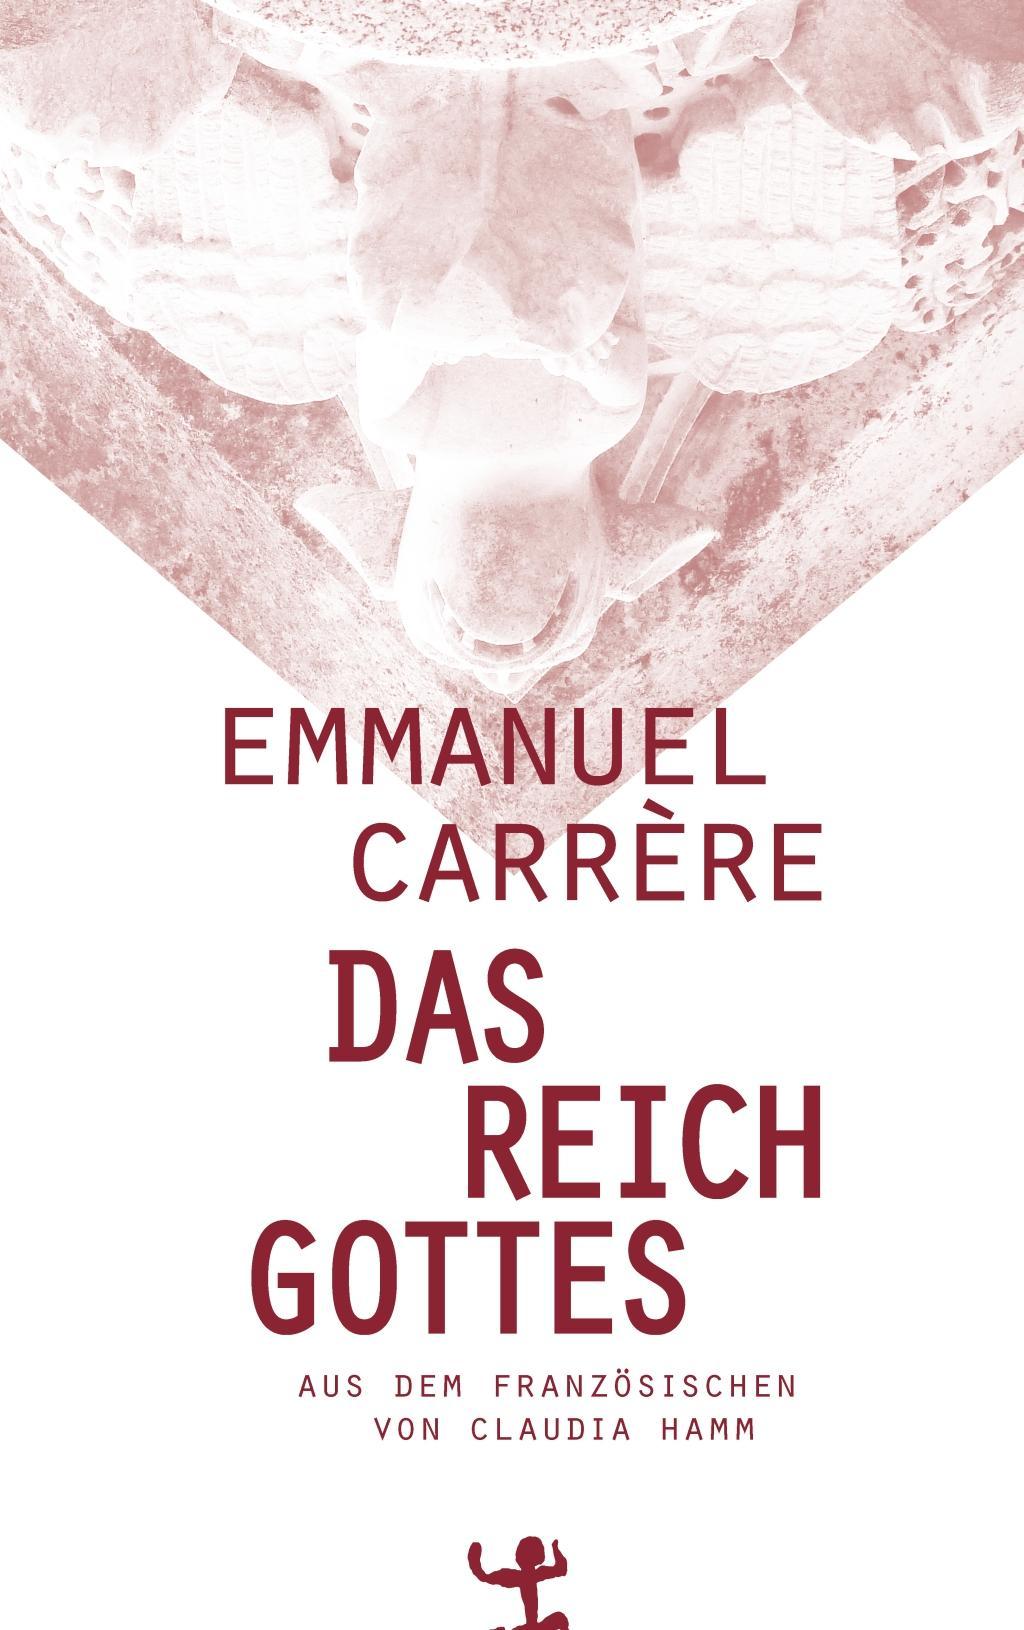 Das Reich Gottes / Emmanuel Carrère / Buch / 524 S. / Deutsch / 2016 / Matthes & Seitz Berlin / EAN 9783957572264 (ISBN 9780972252225)